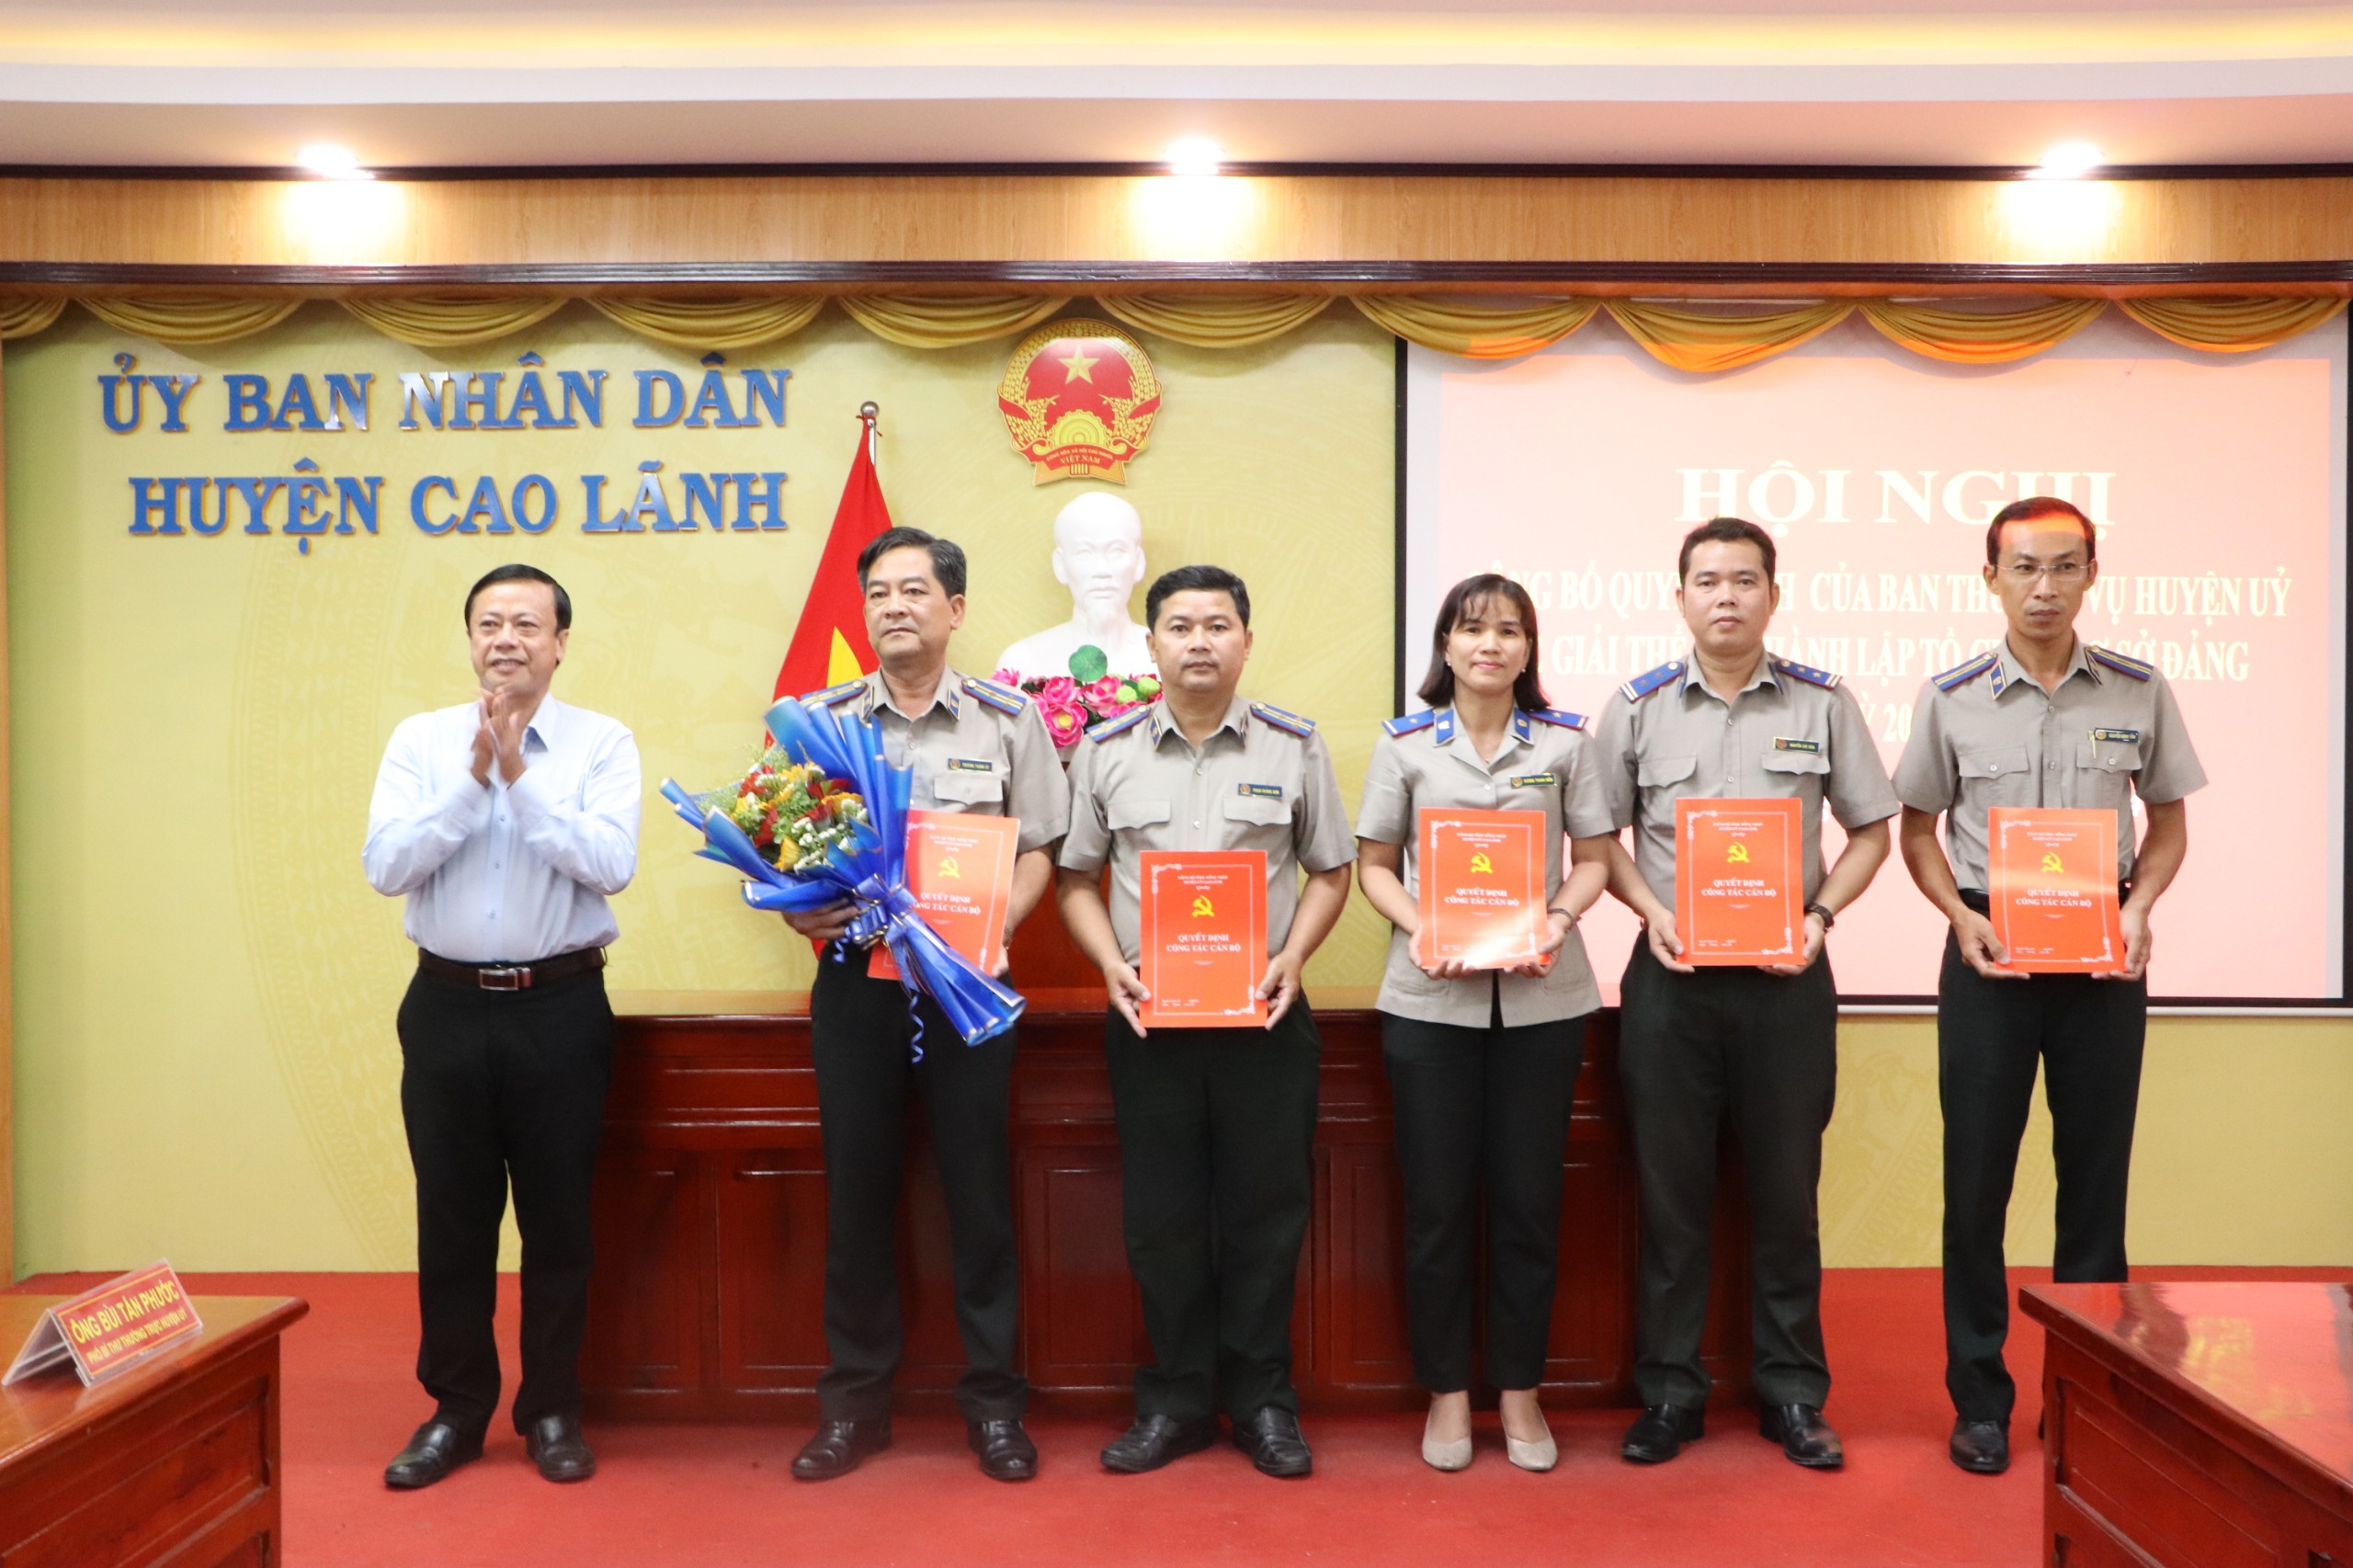 Phó Bí thư Huyện uỷ Cao Lãnh trao Quyết định thành lập Chi bộ Thi hành án huyện Cao Lãnh